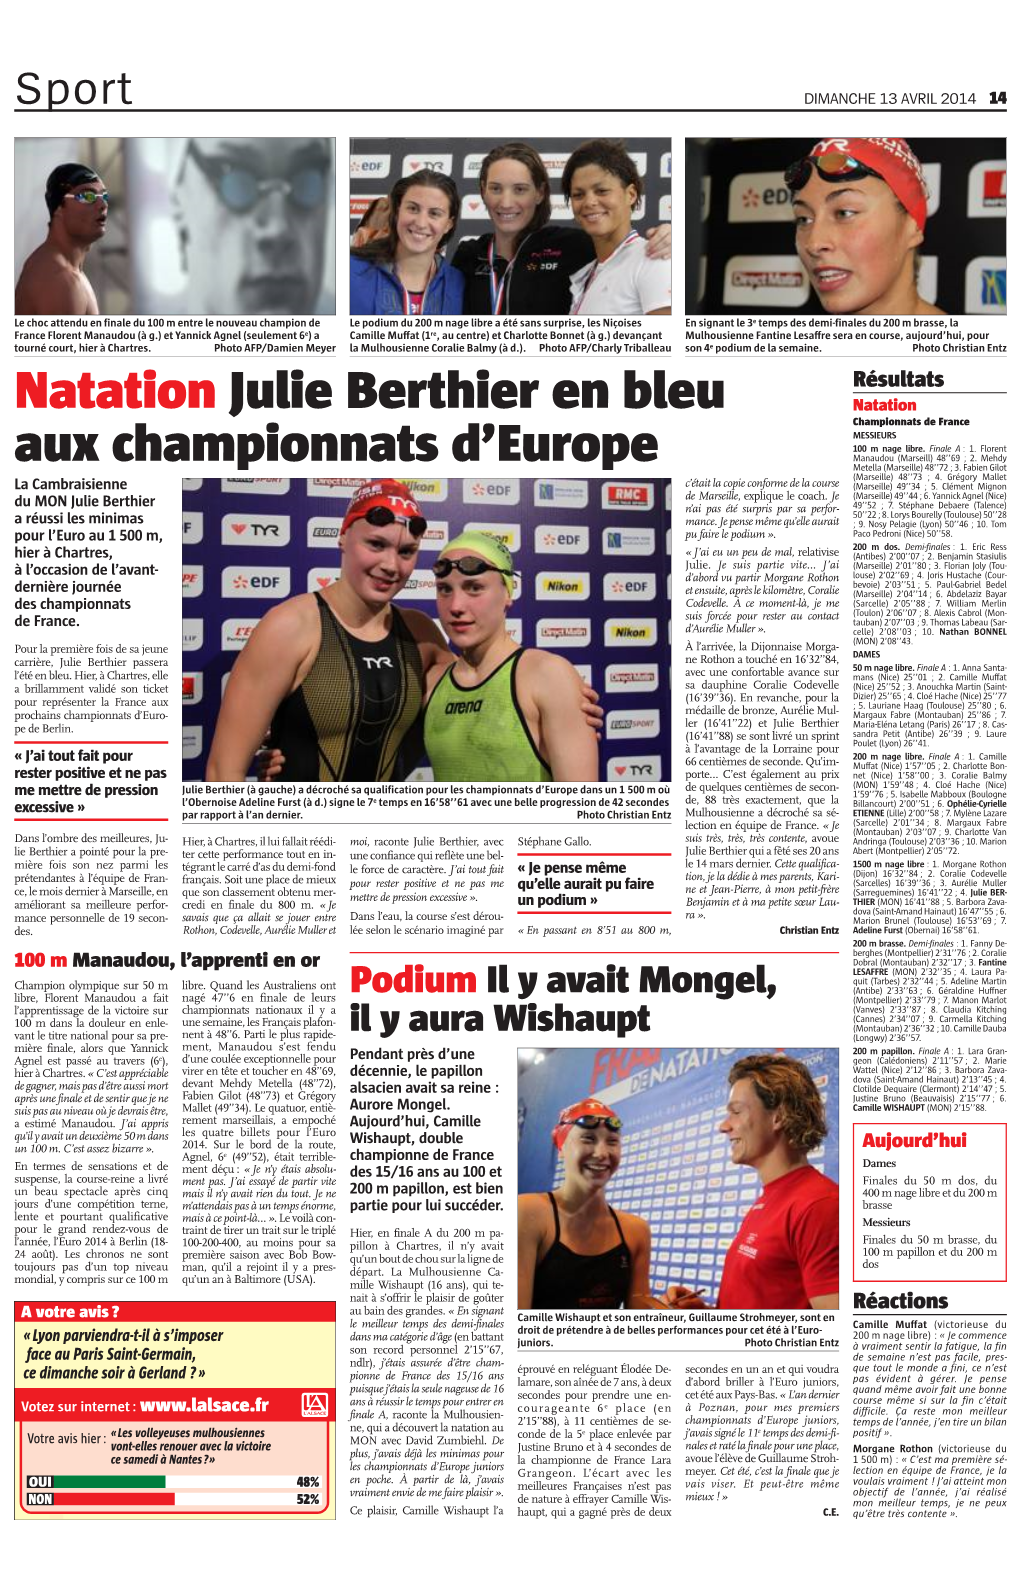 Natation Julie Berthier En Bleu Aux Championnats D'europe